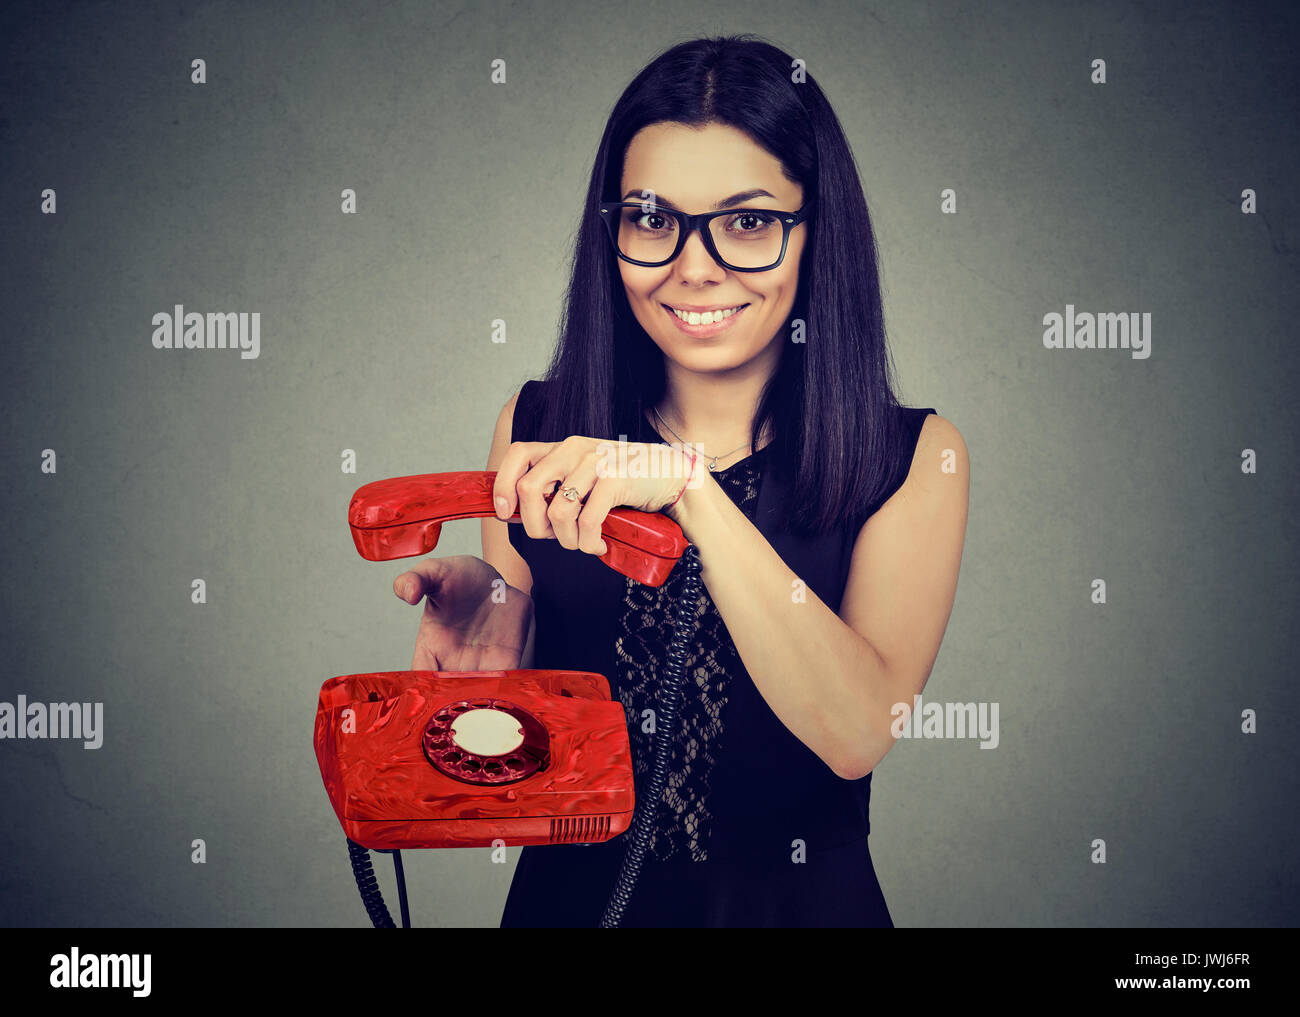 Mujer sonriente de colgar el teléfono antiguo Foto de stock